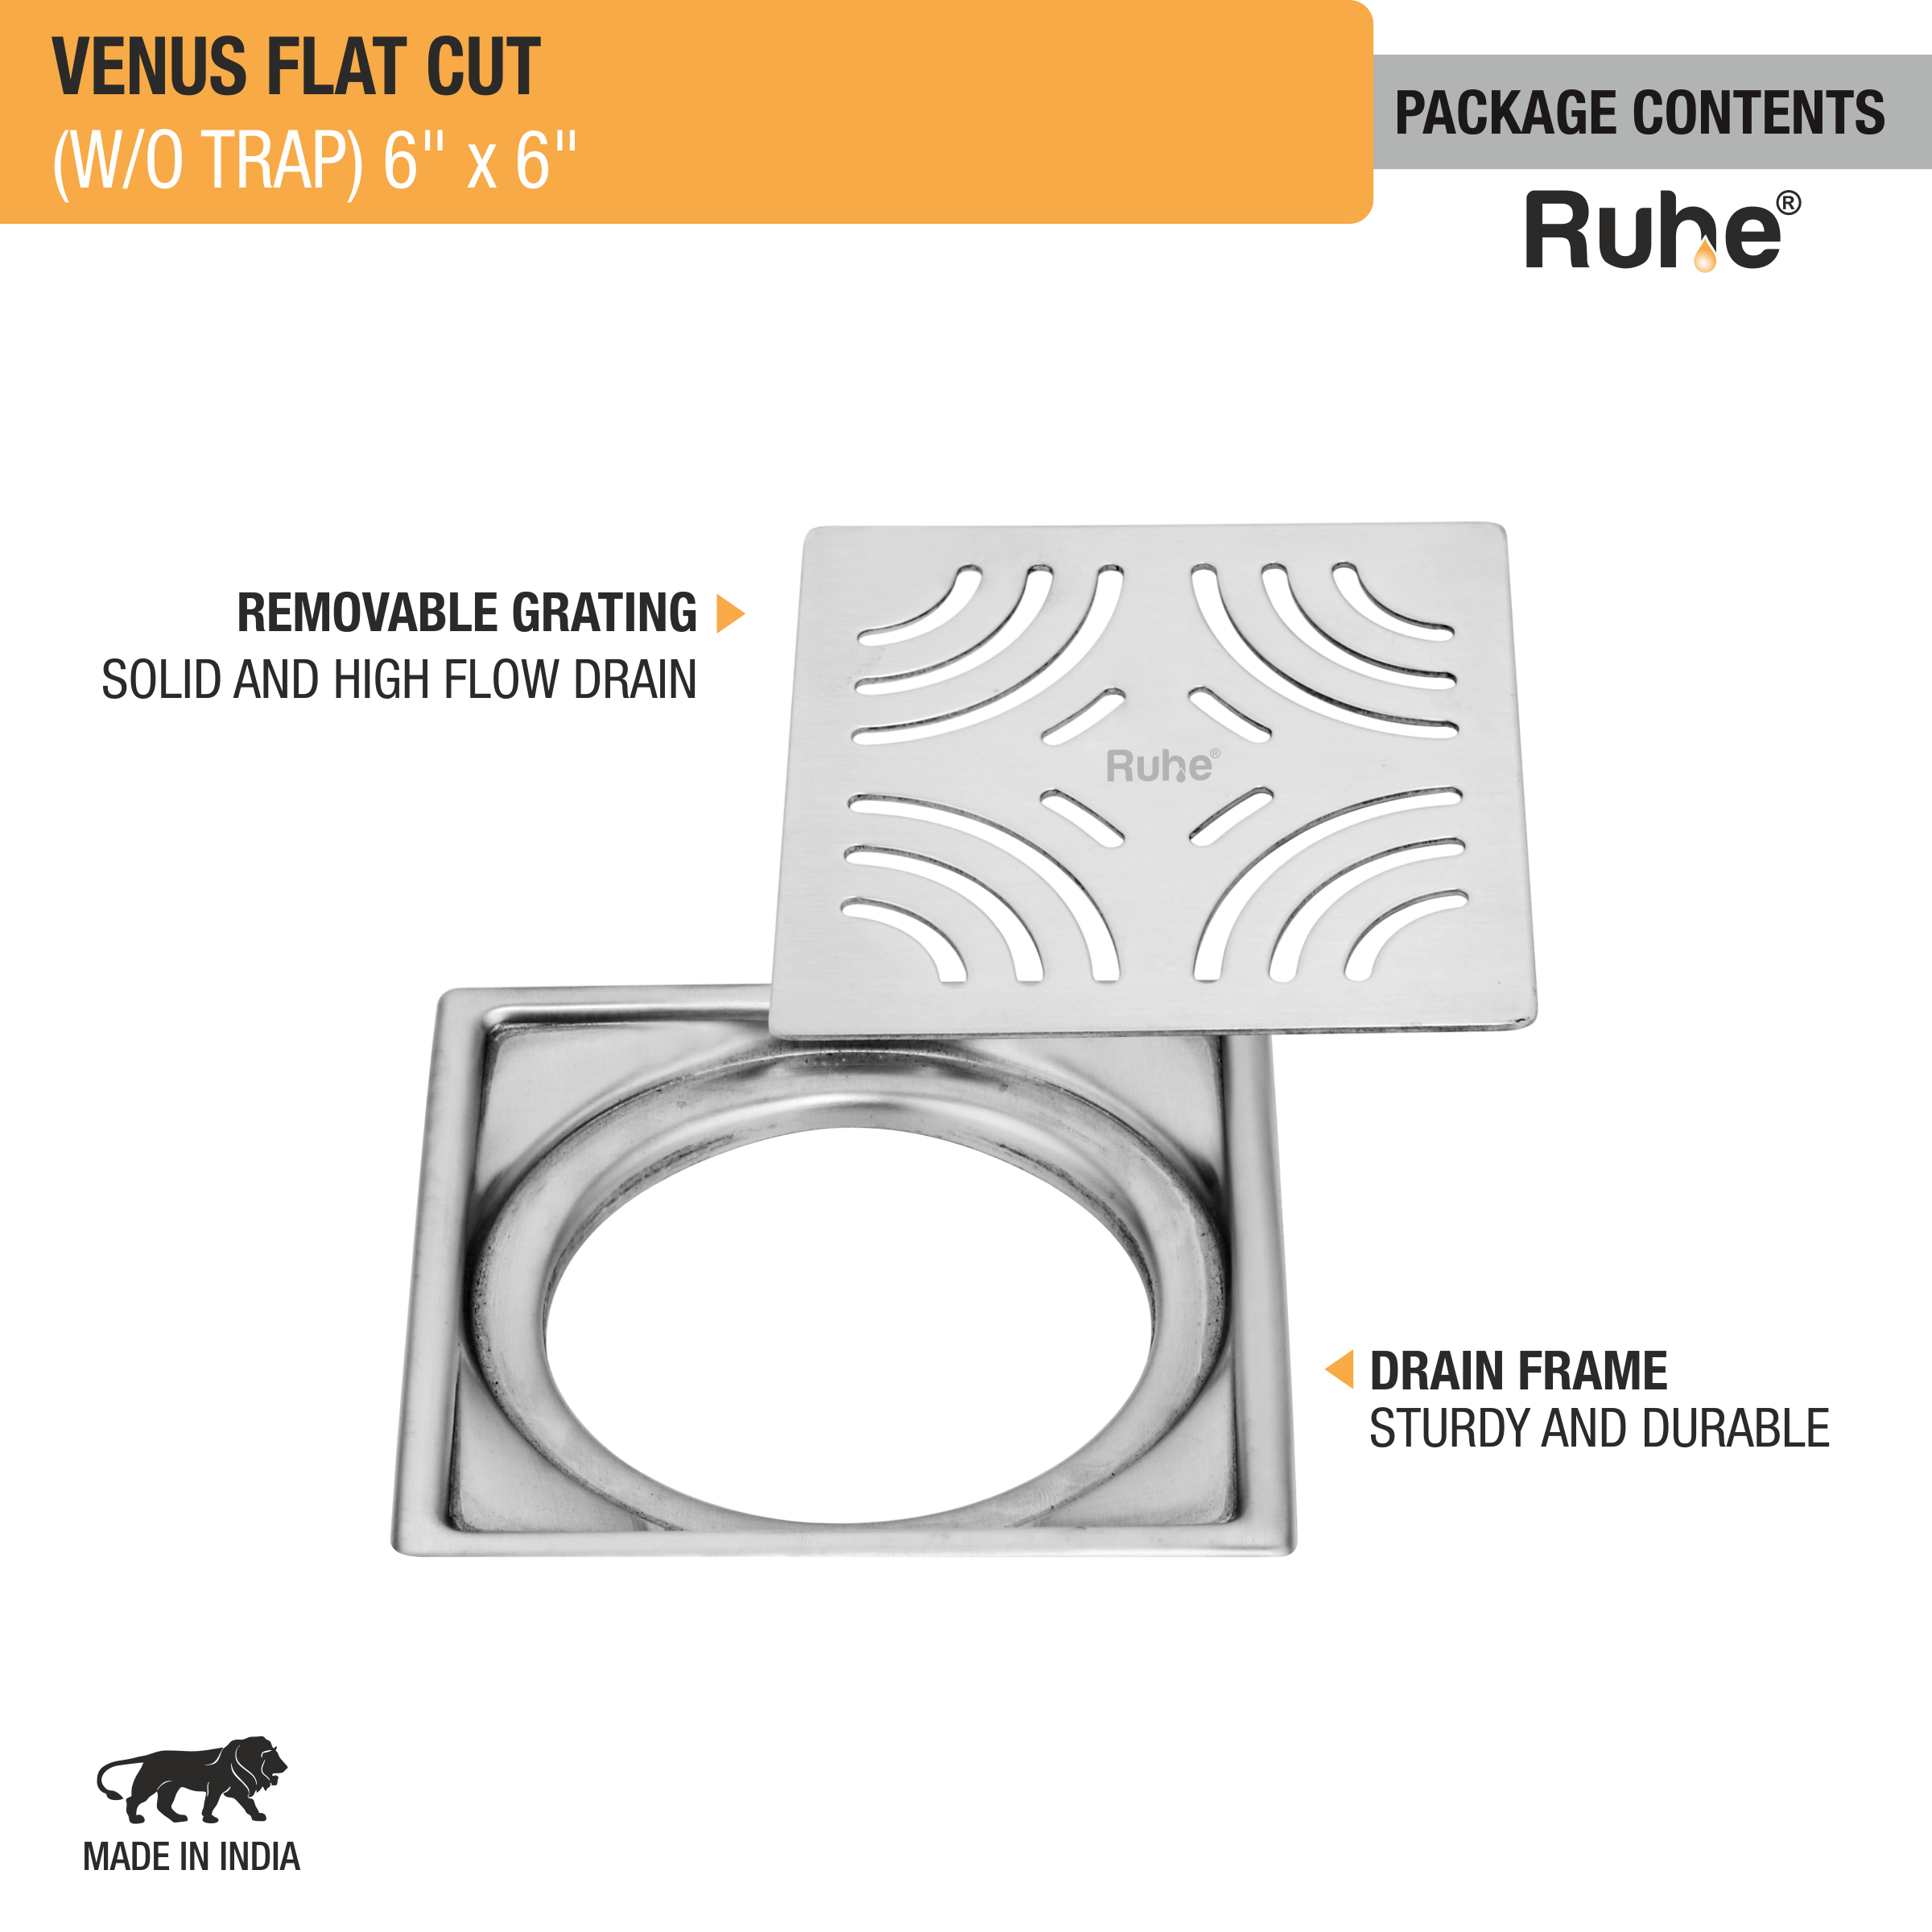 Venus Square Premium Flat Cut Floor Drain (6 x 6 Inches) package content